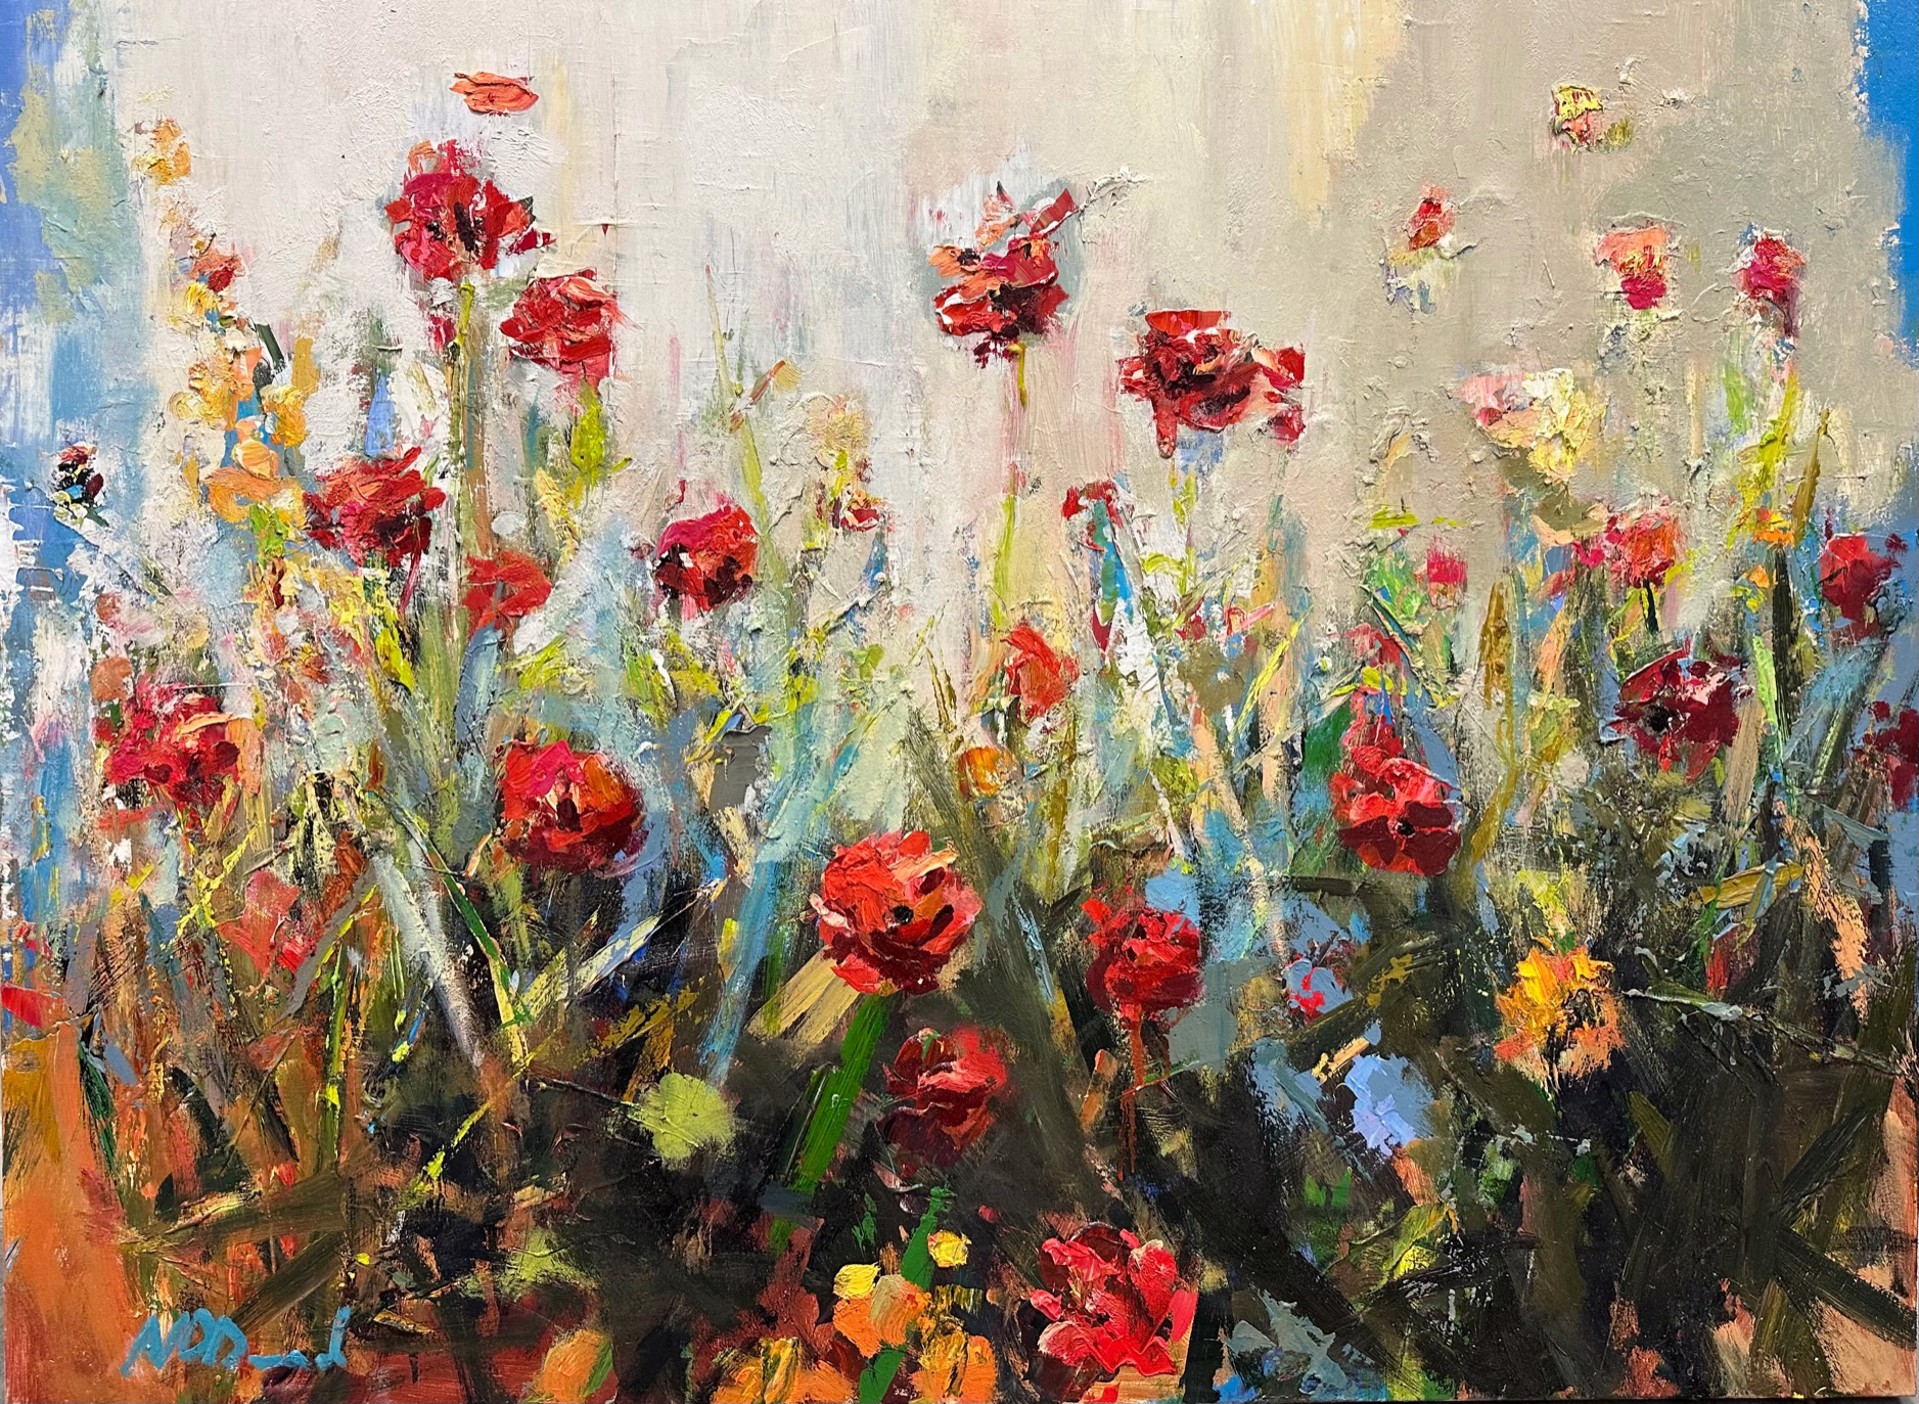 Kruse Trombello Floral Commission by Noah Desmond